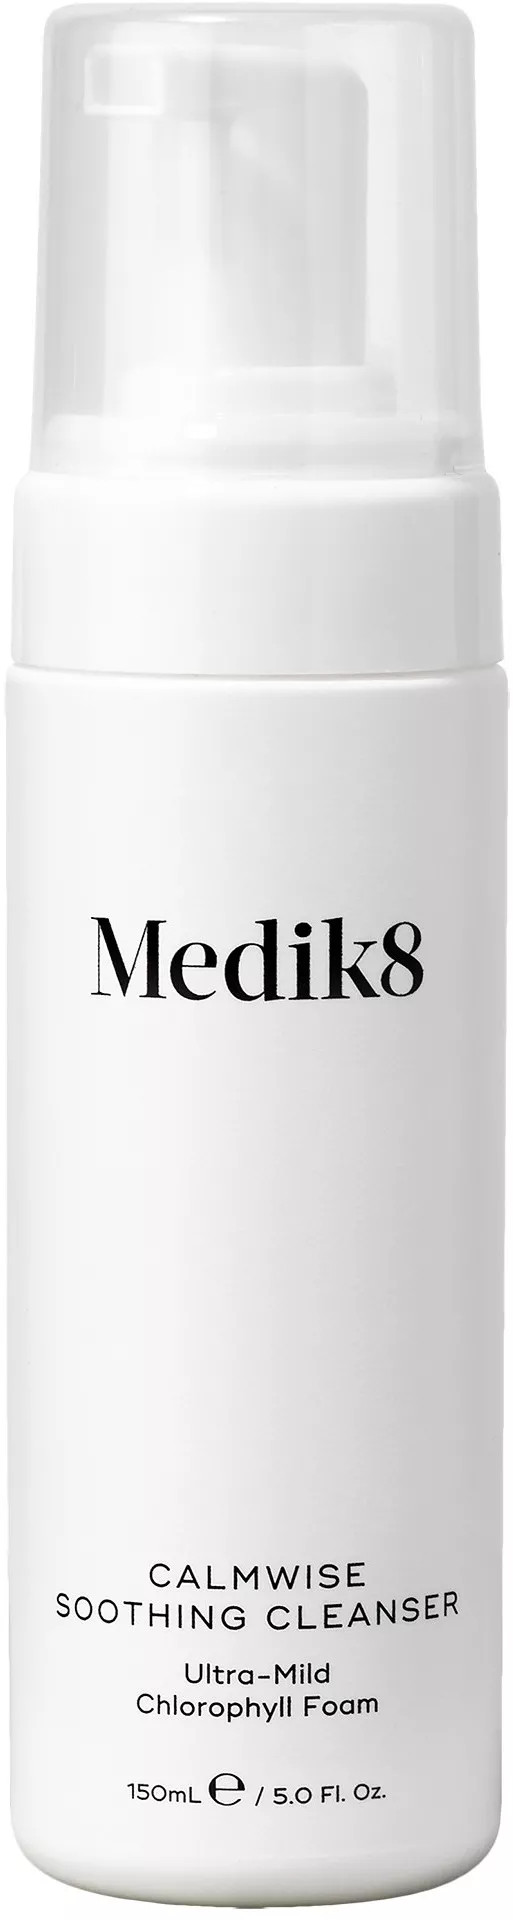 Medik8 Čisticí pleťová pěna Calmwise (Soothing Cleanser) 150 ml